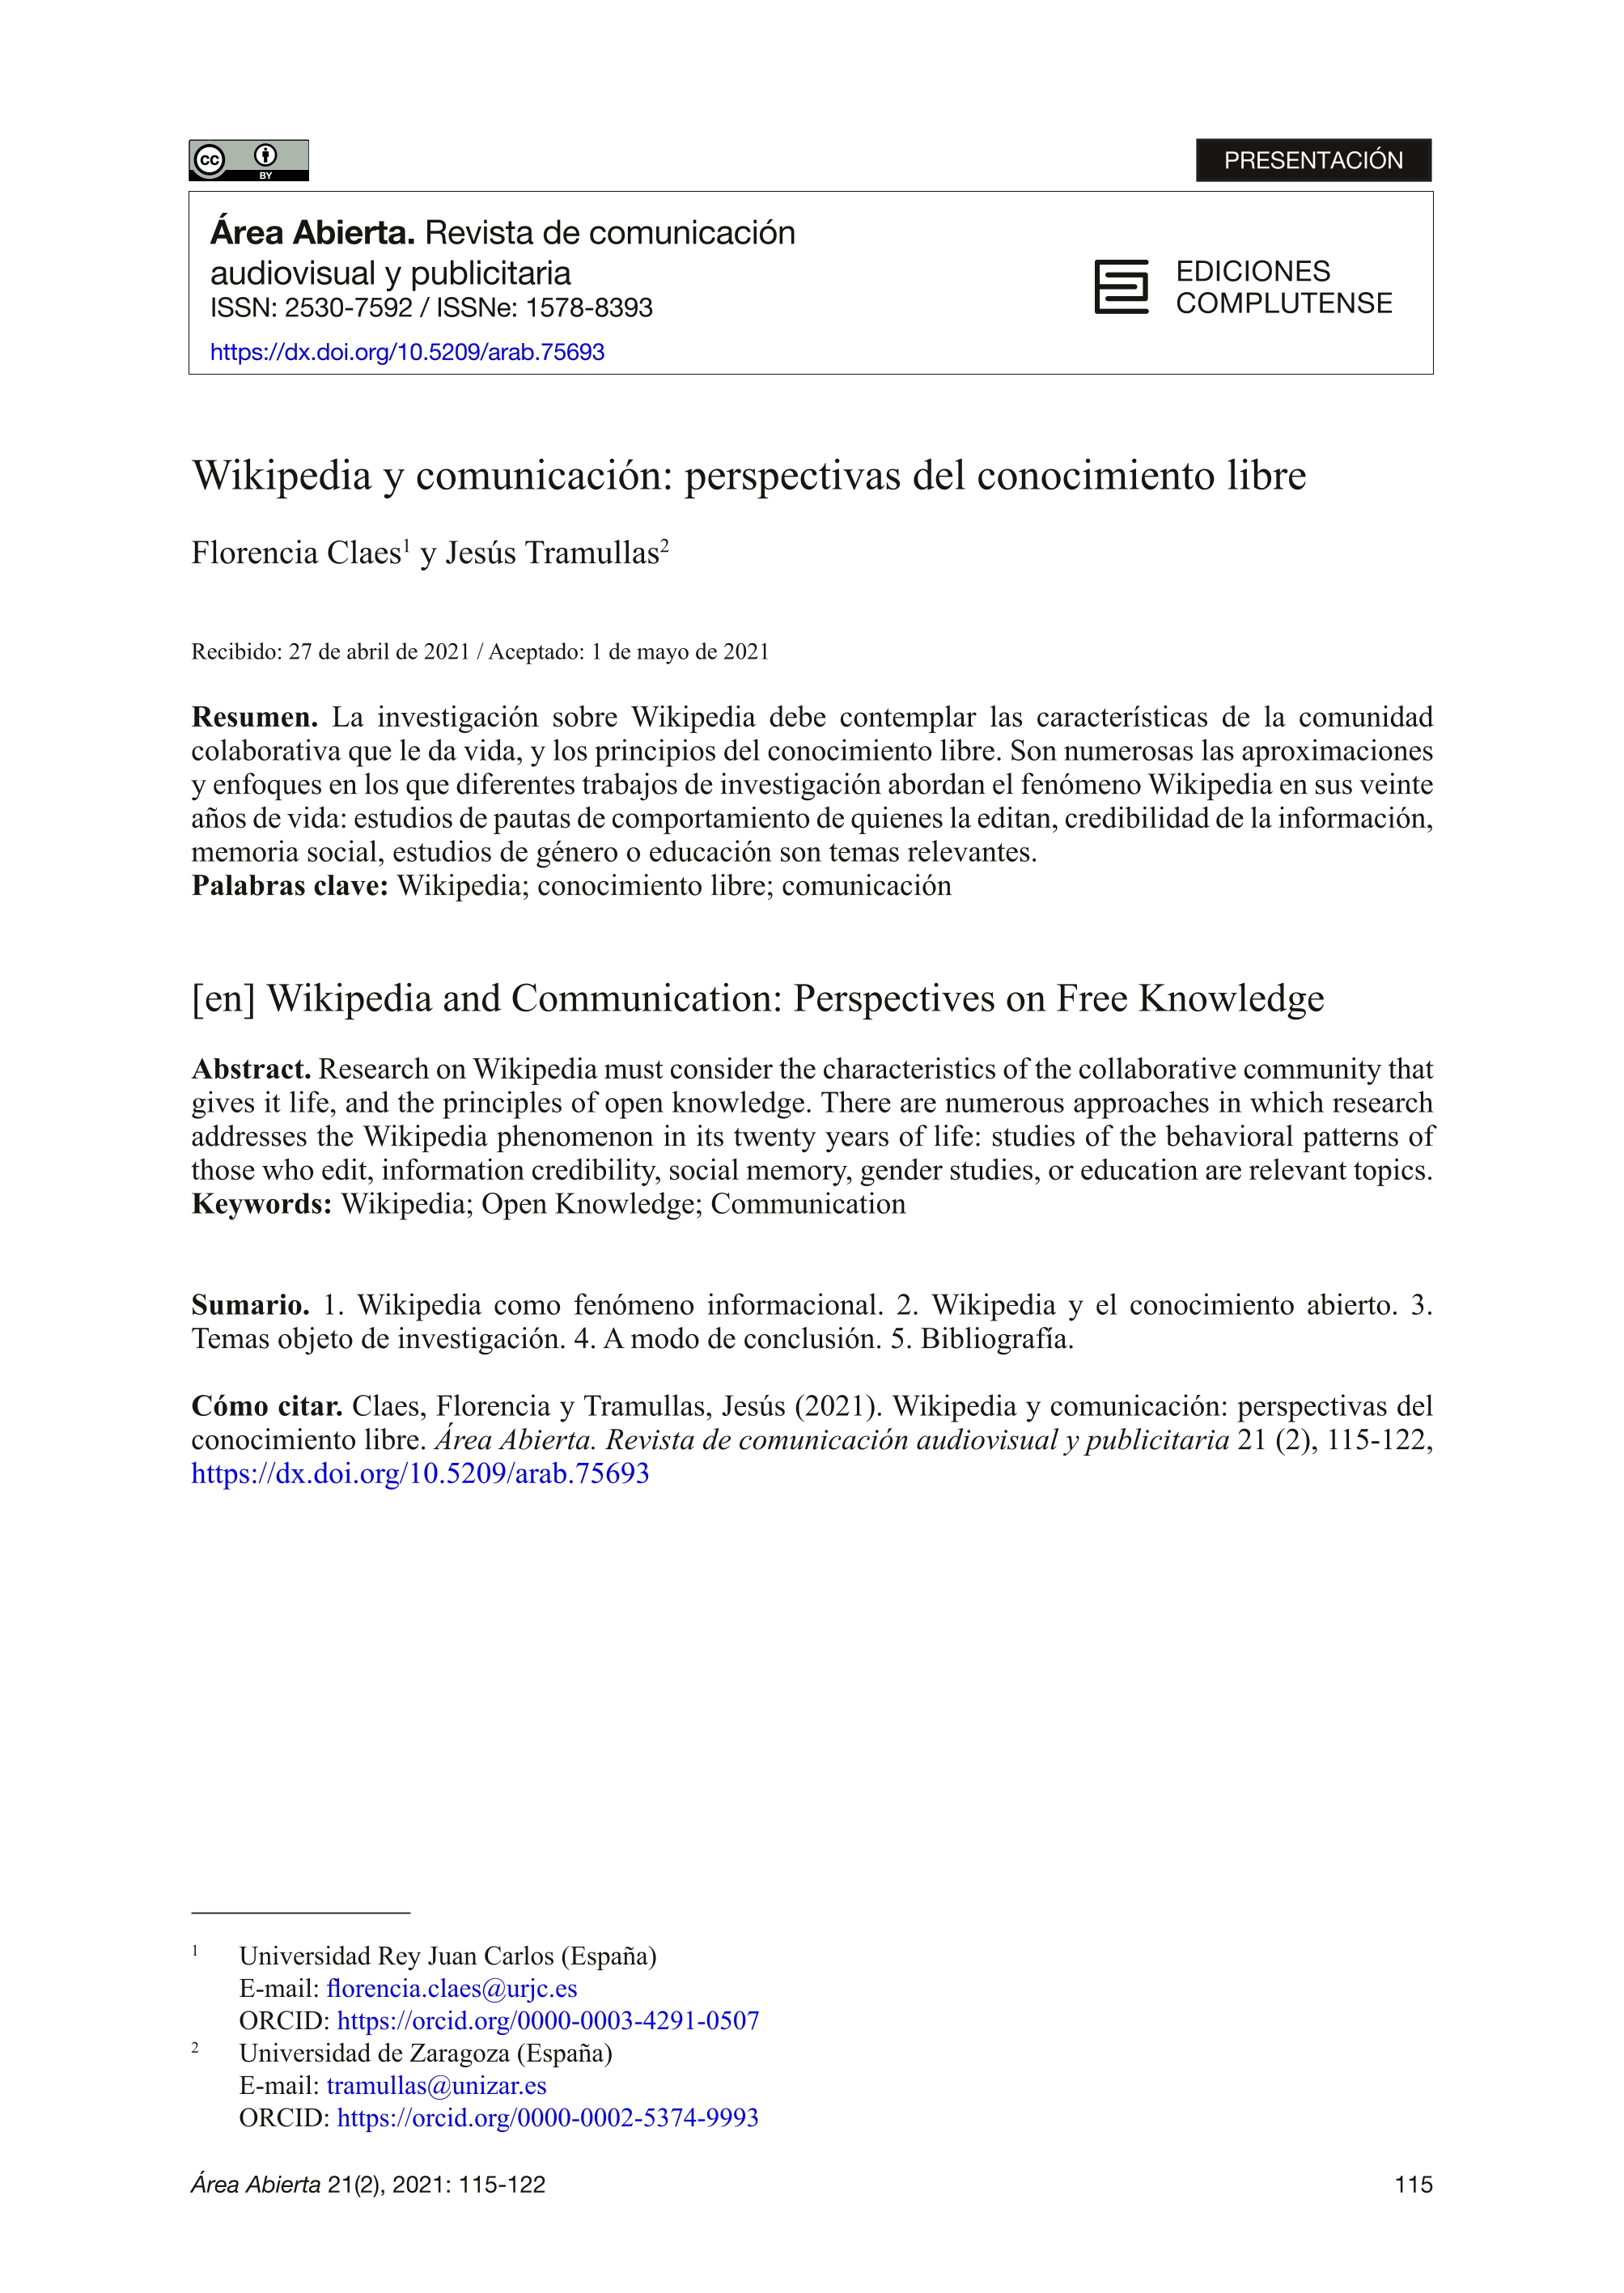 Wikipedia y comunicación: perspectivas del conocimiento libre